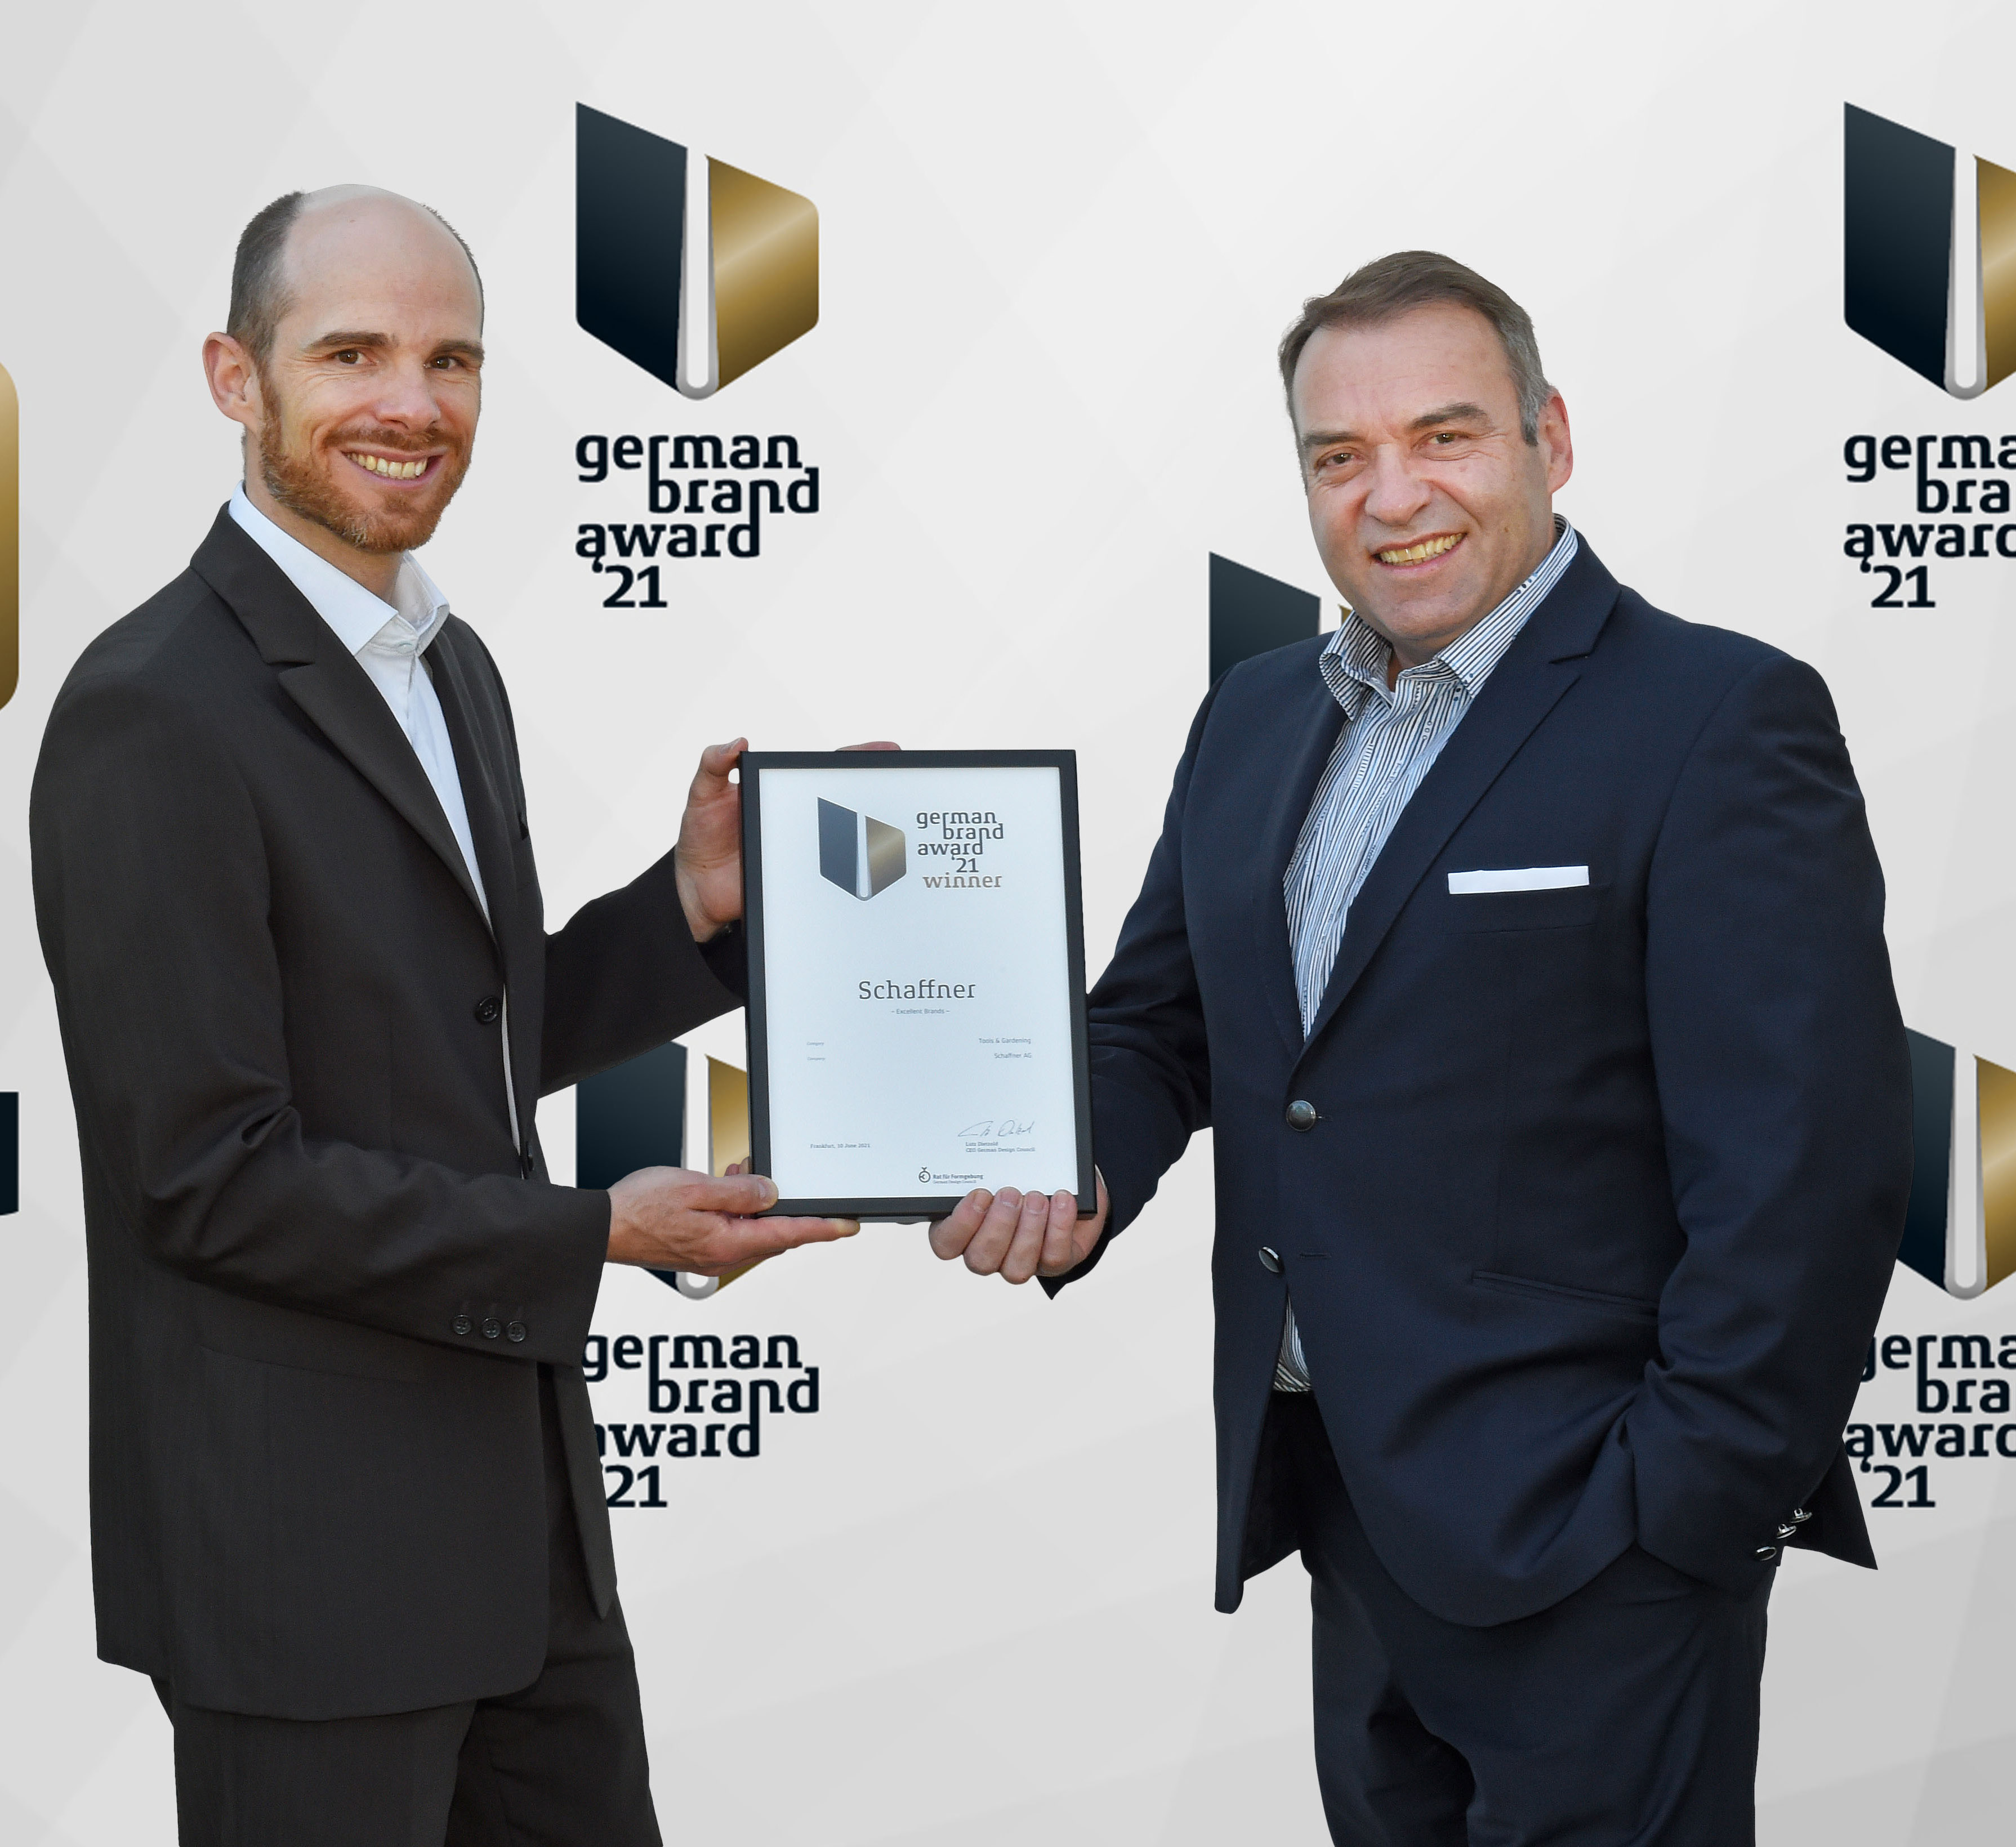 Award at the German Brand Award 2021